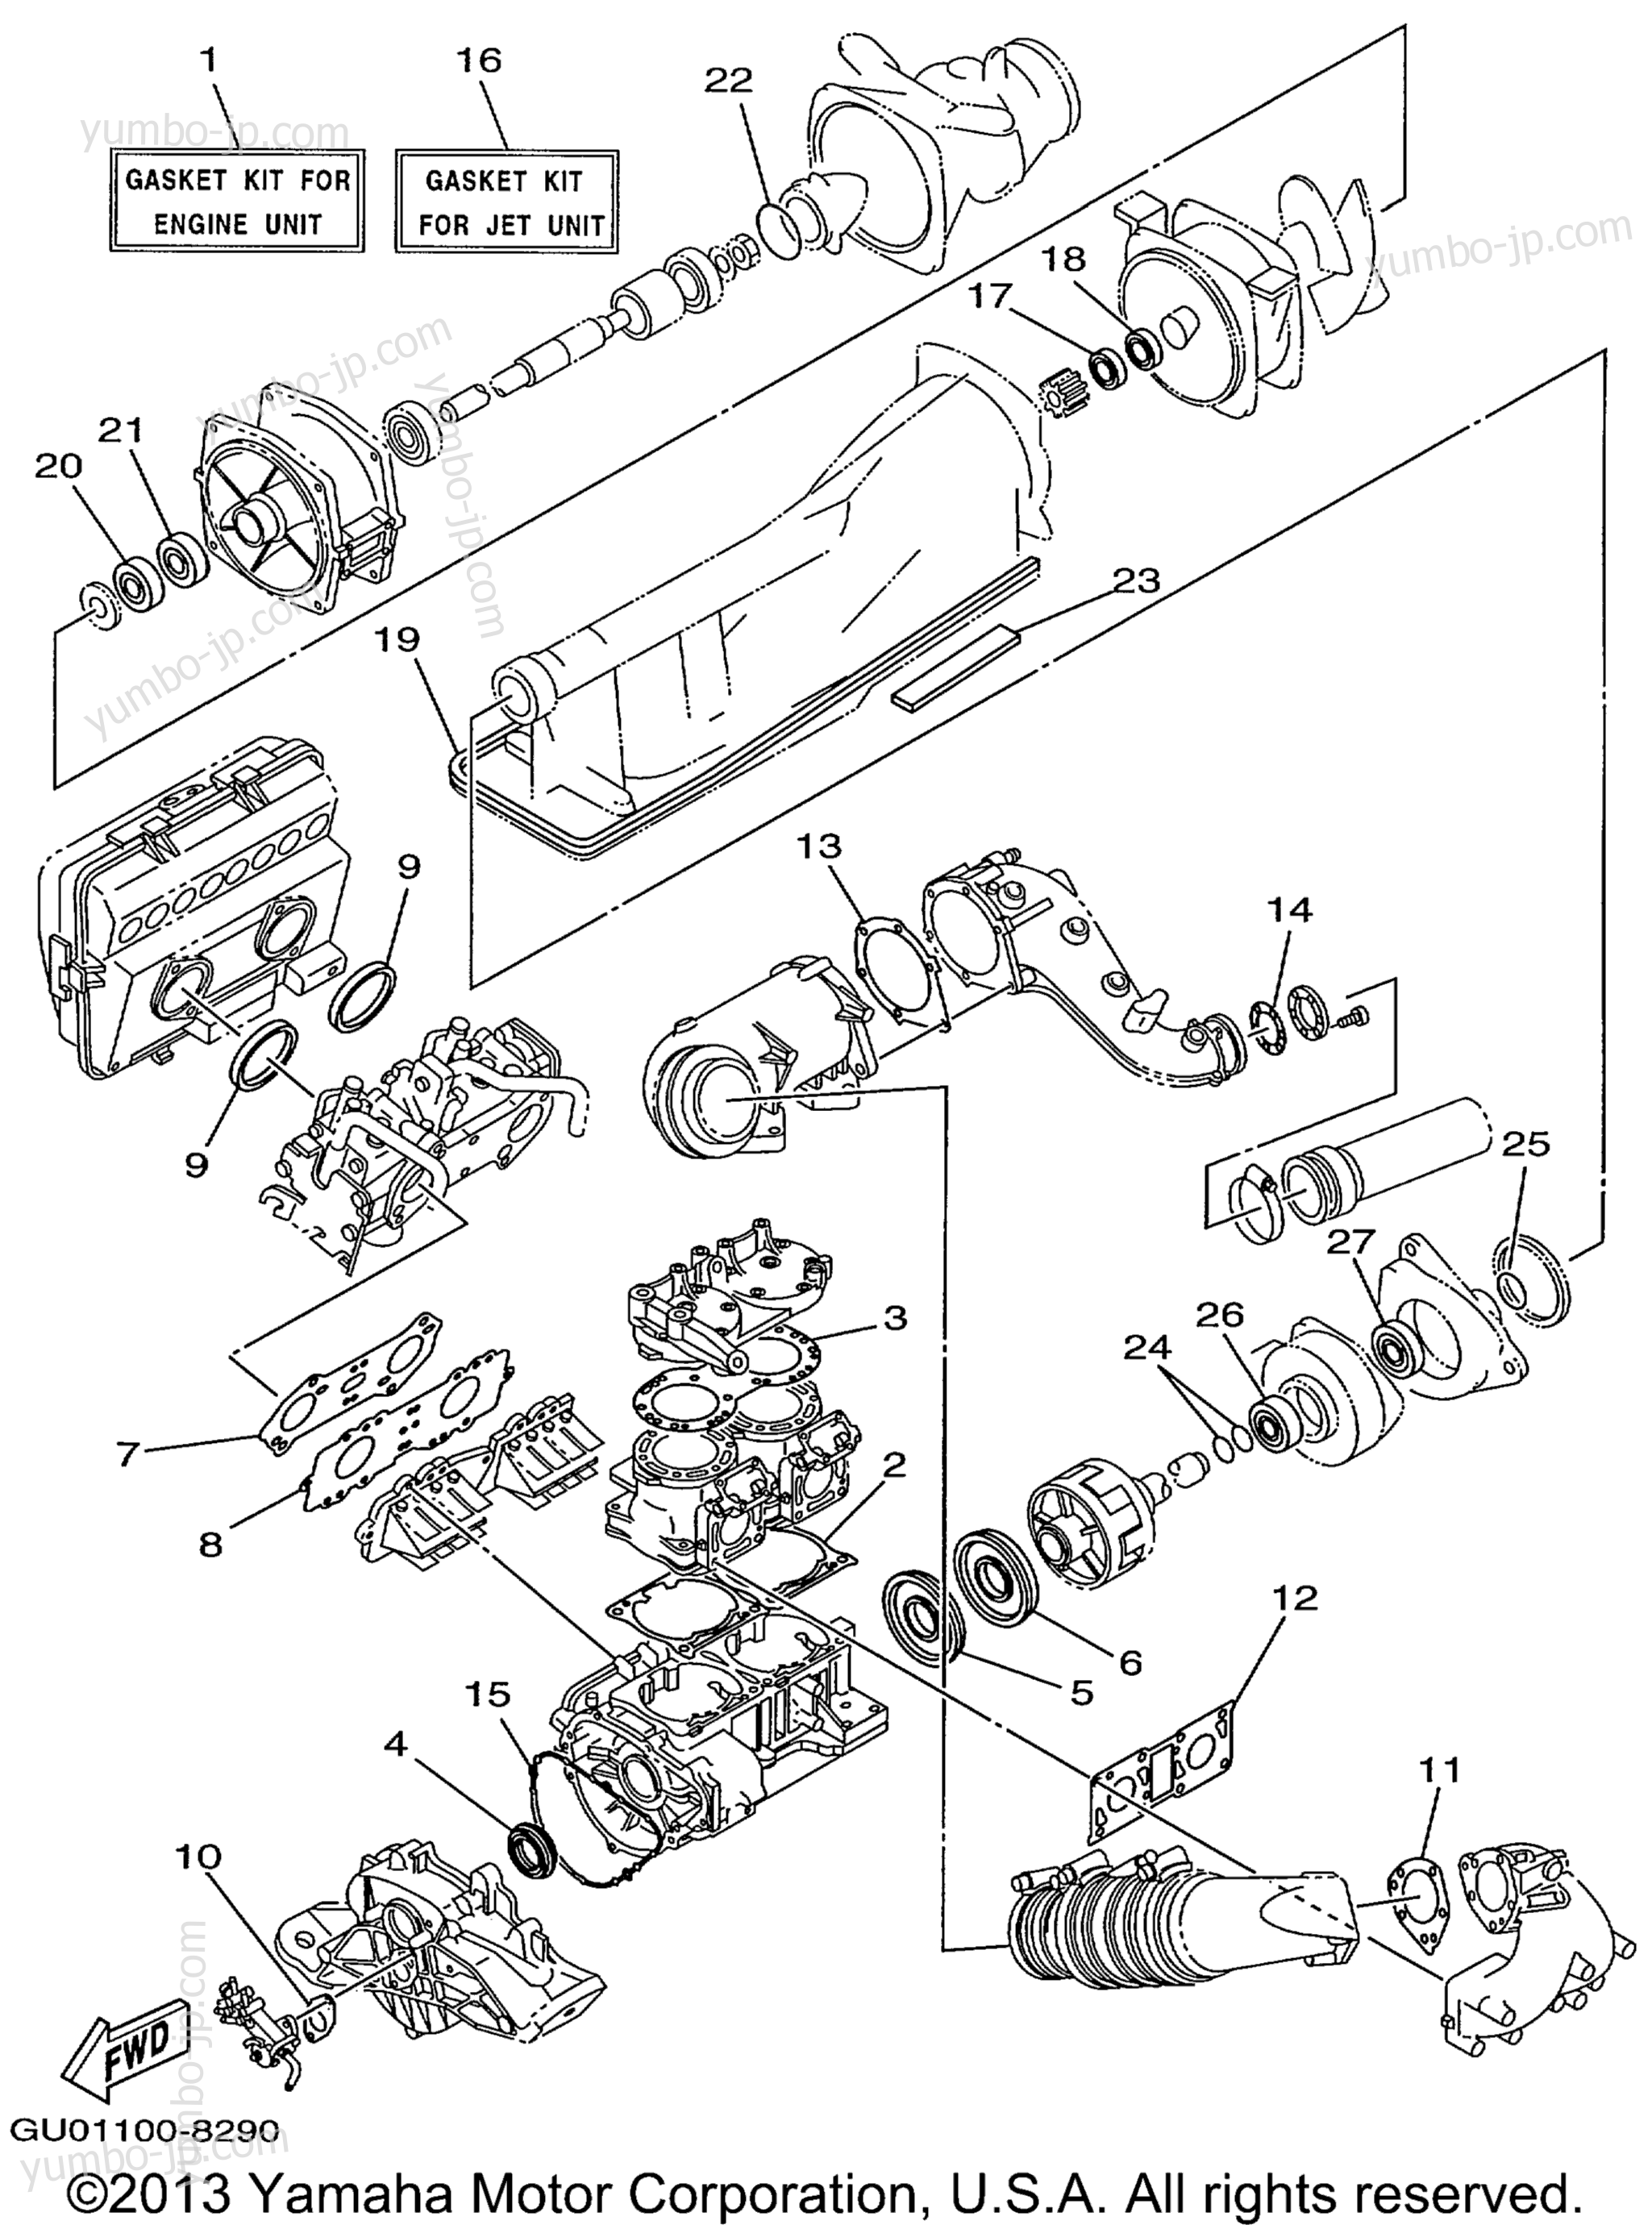 Repair Kit 1 для гидроциклов YAMAHA WAVE RUNNER GP800W (GP800W) 1998 г.